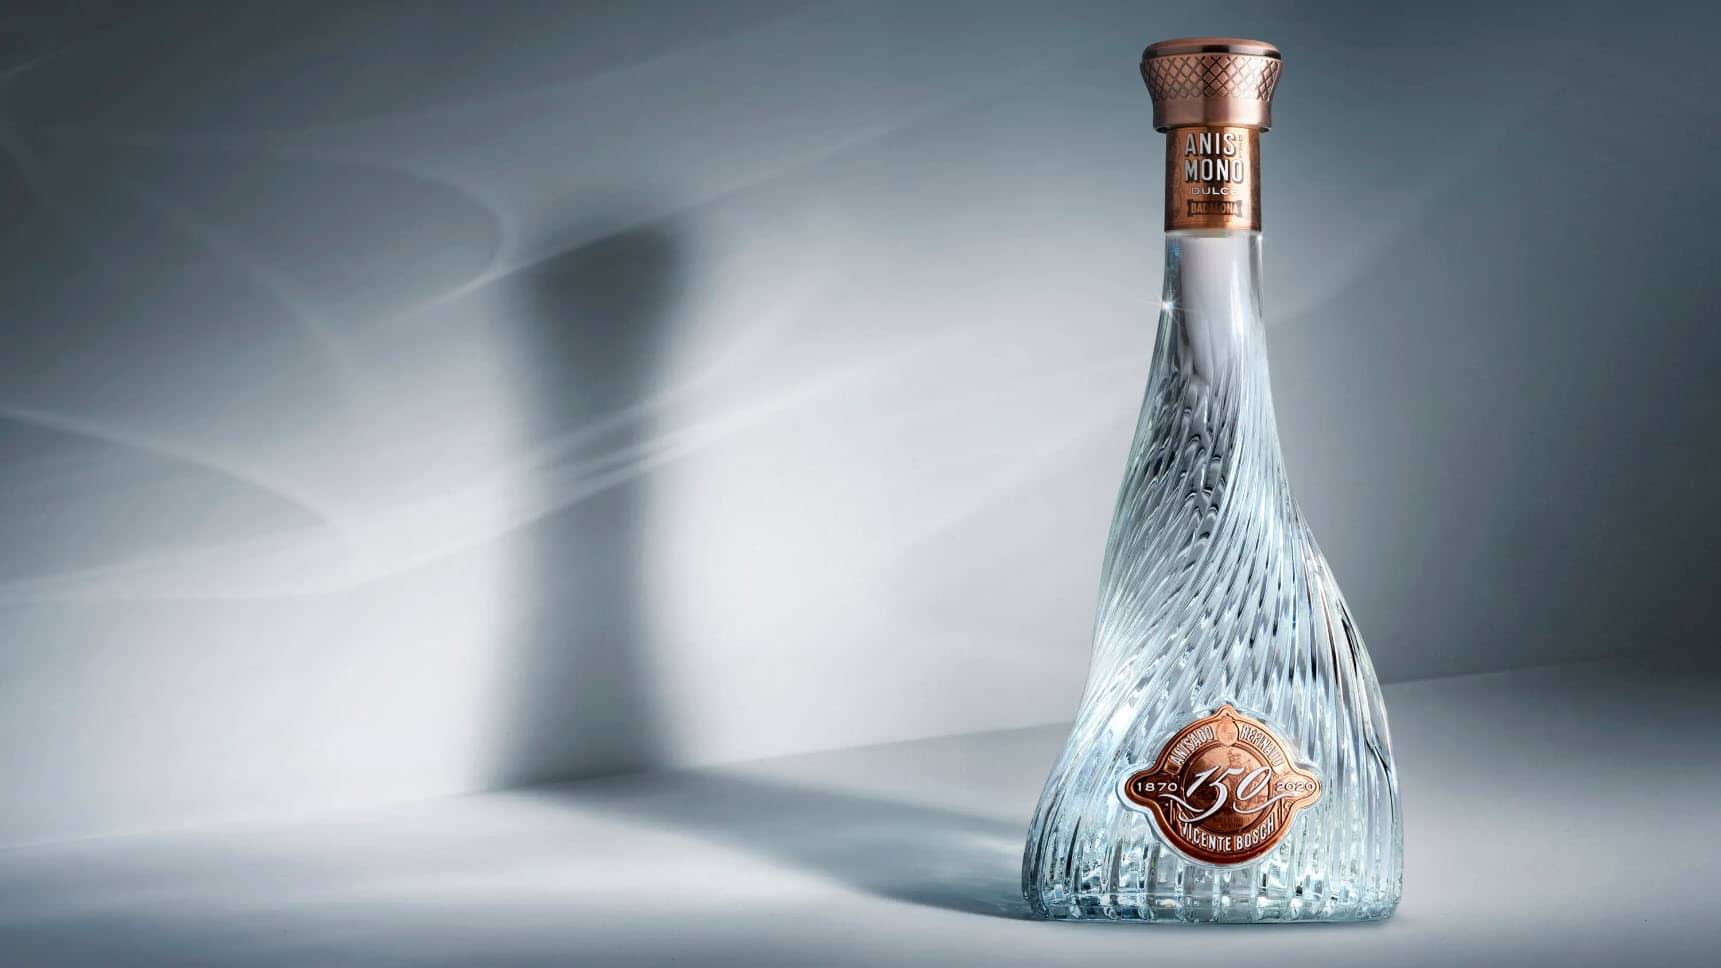 Osborne's Anis del Mono Dulce 150th-anniversary bottle